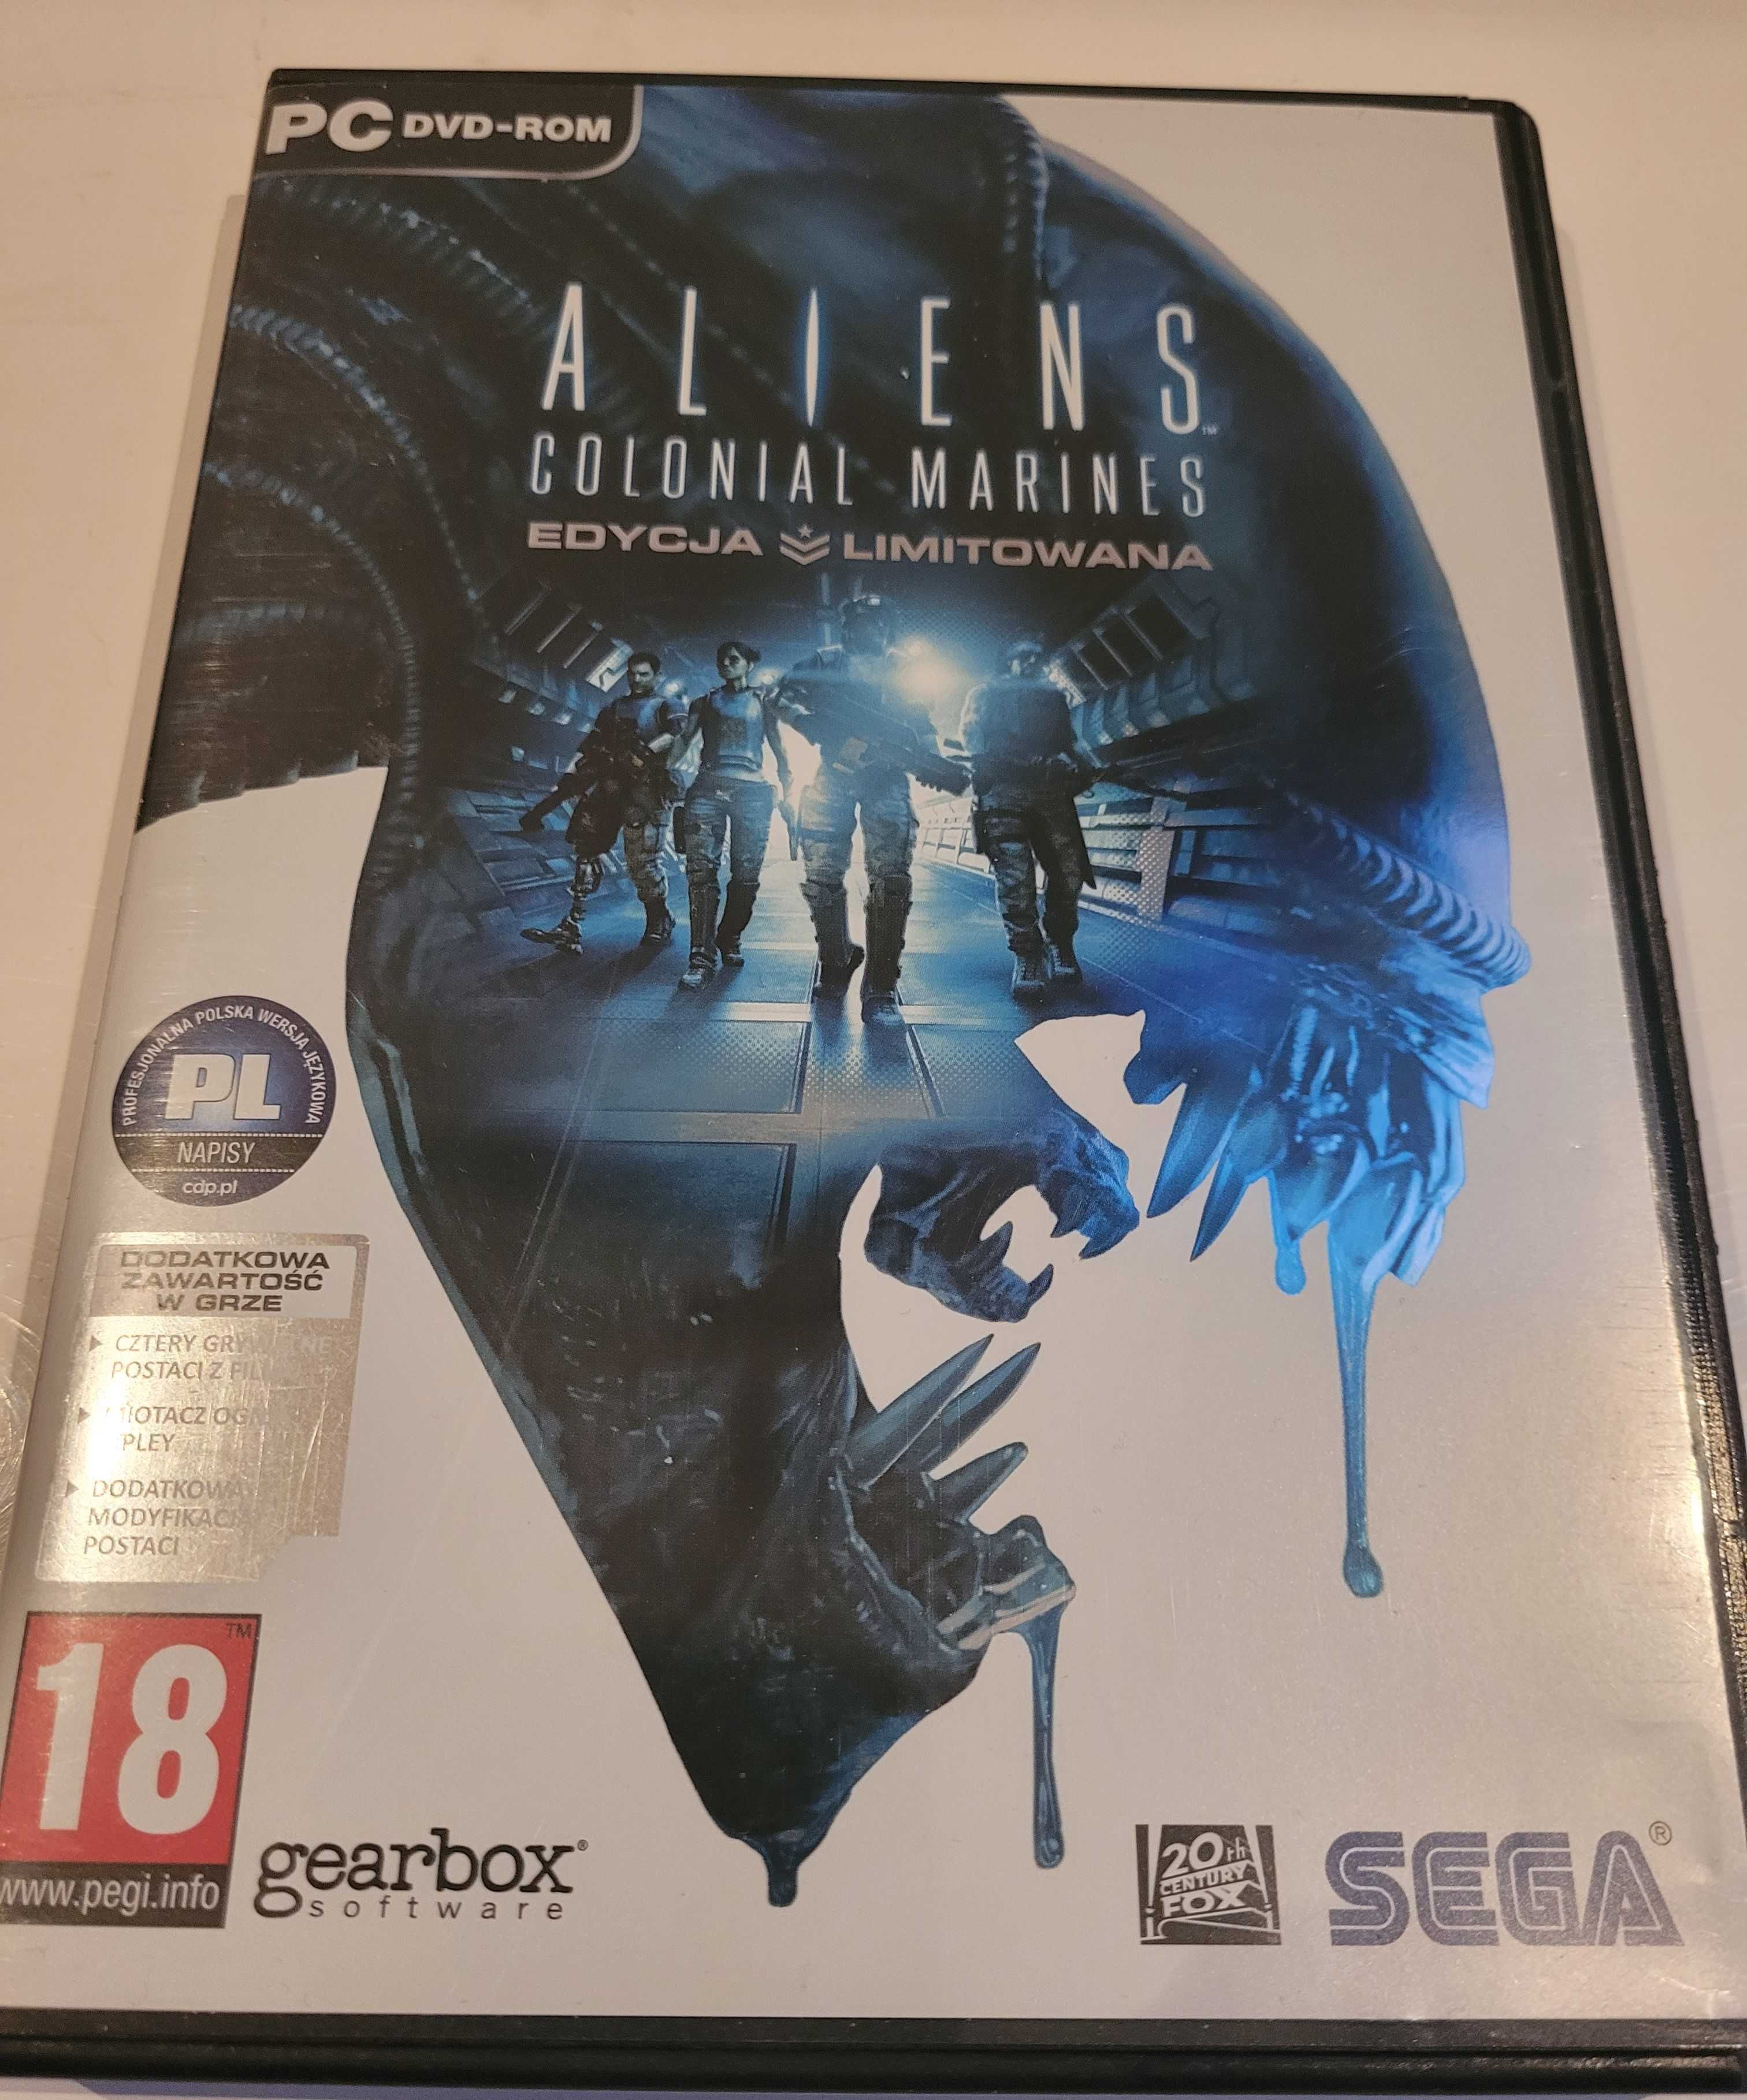 Aliens - colonial marines PC edycja limitowana